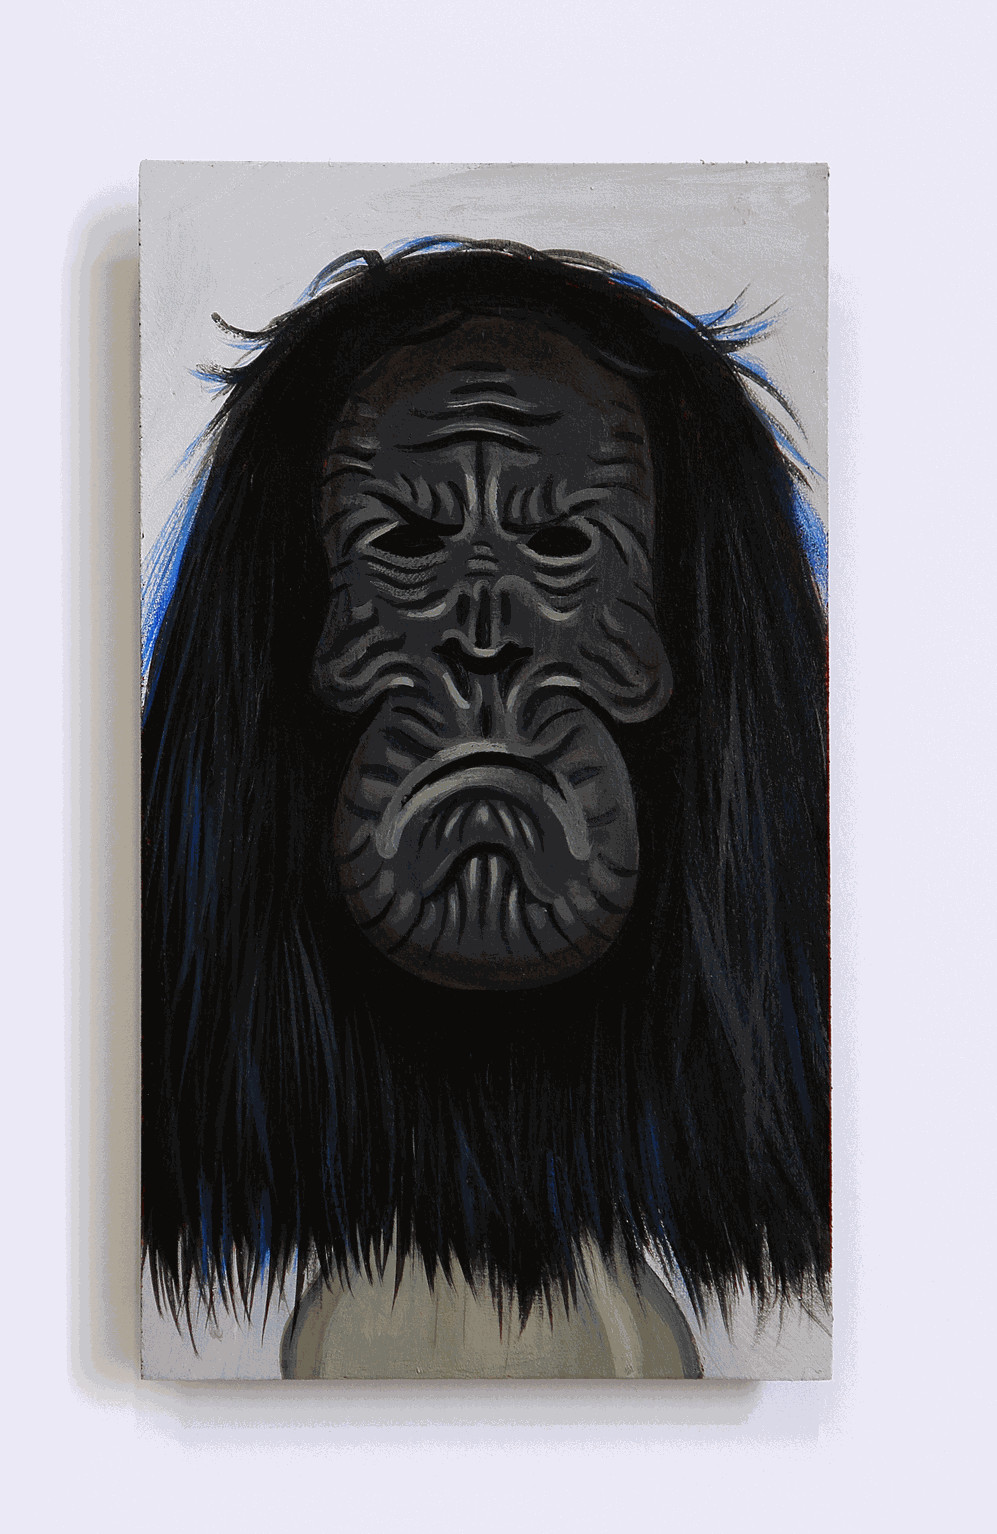 Un Careta de Gorila Triste, 2020 Acrylic on wood approx 16 x 9 cm. / 6.3 x 3.5 in.